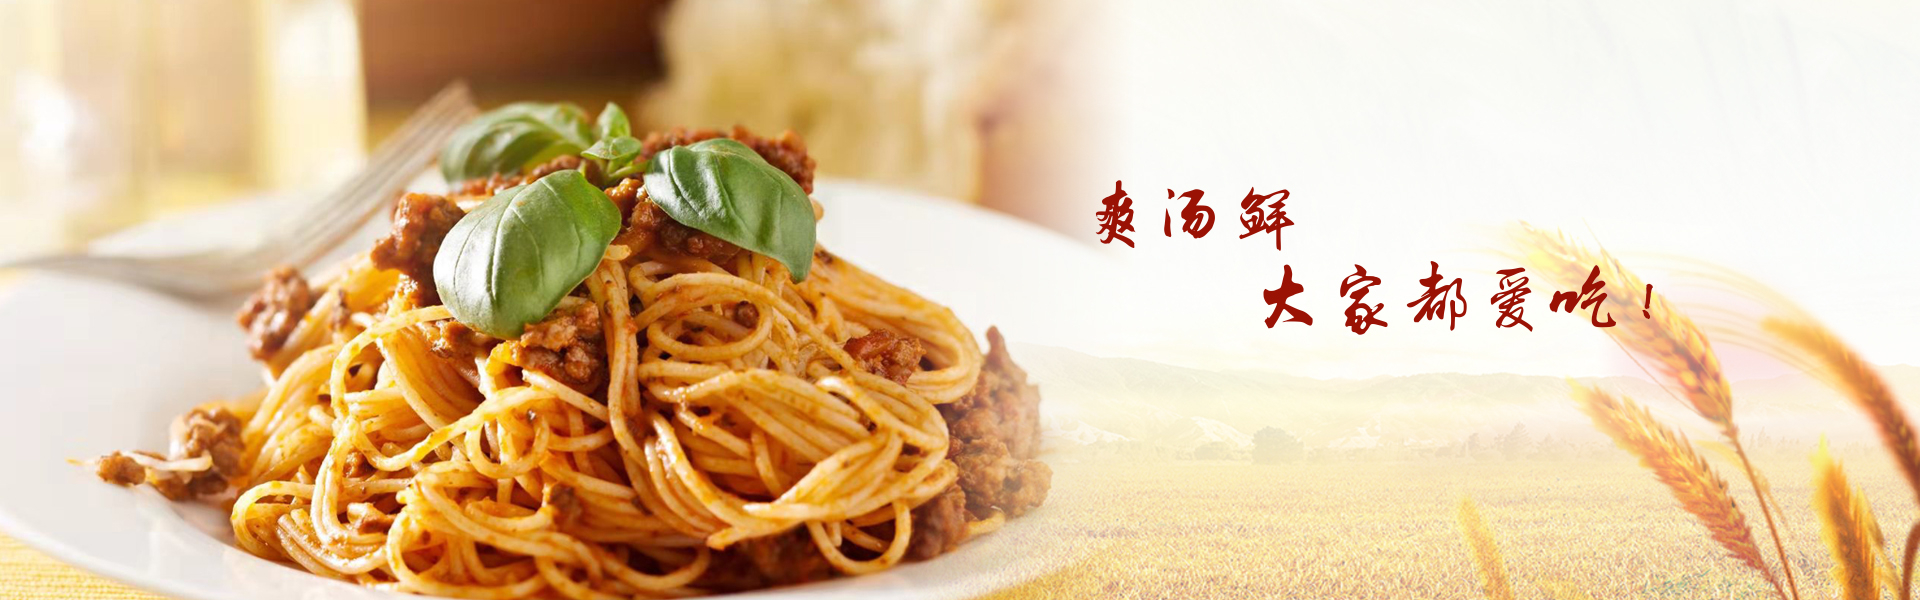 伊都食品参加第7届广州国际餐饮连锁加盟展